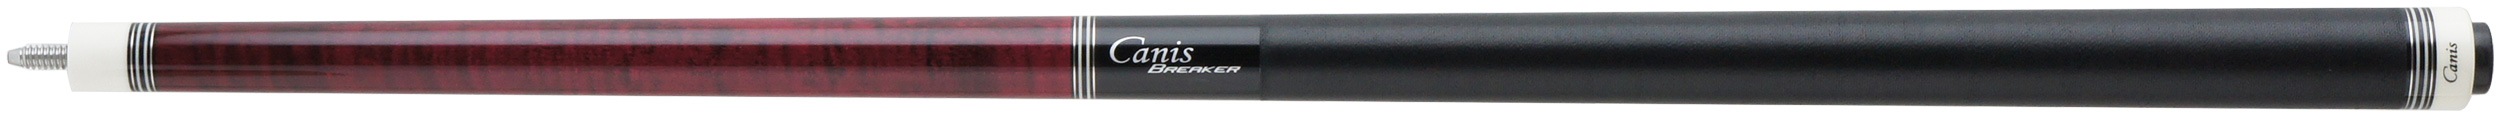 キャニスブレイカー レッド (リネンラップ) cbk-rli (ハードメープルシャフト装備) 商品画像